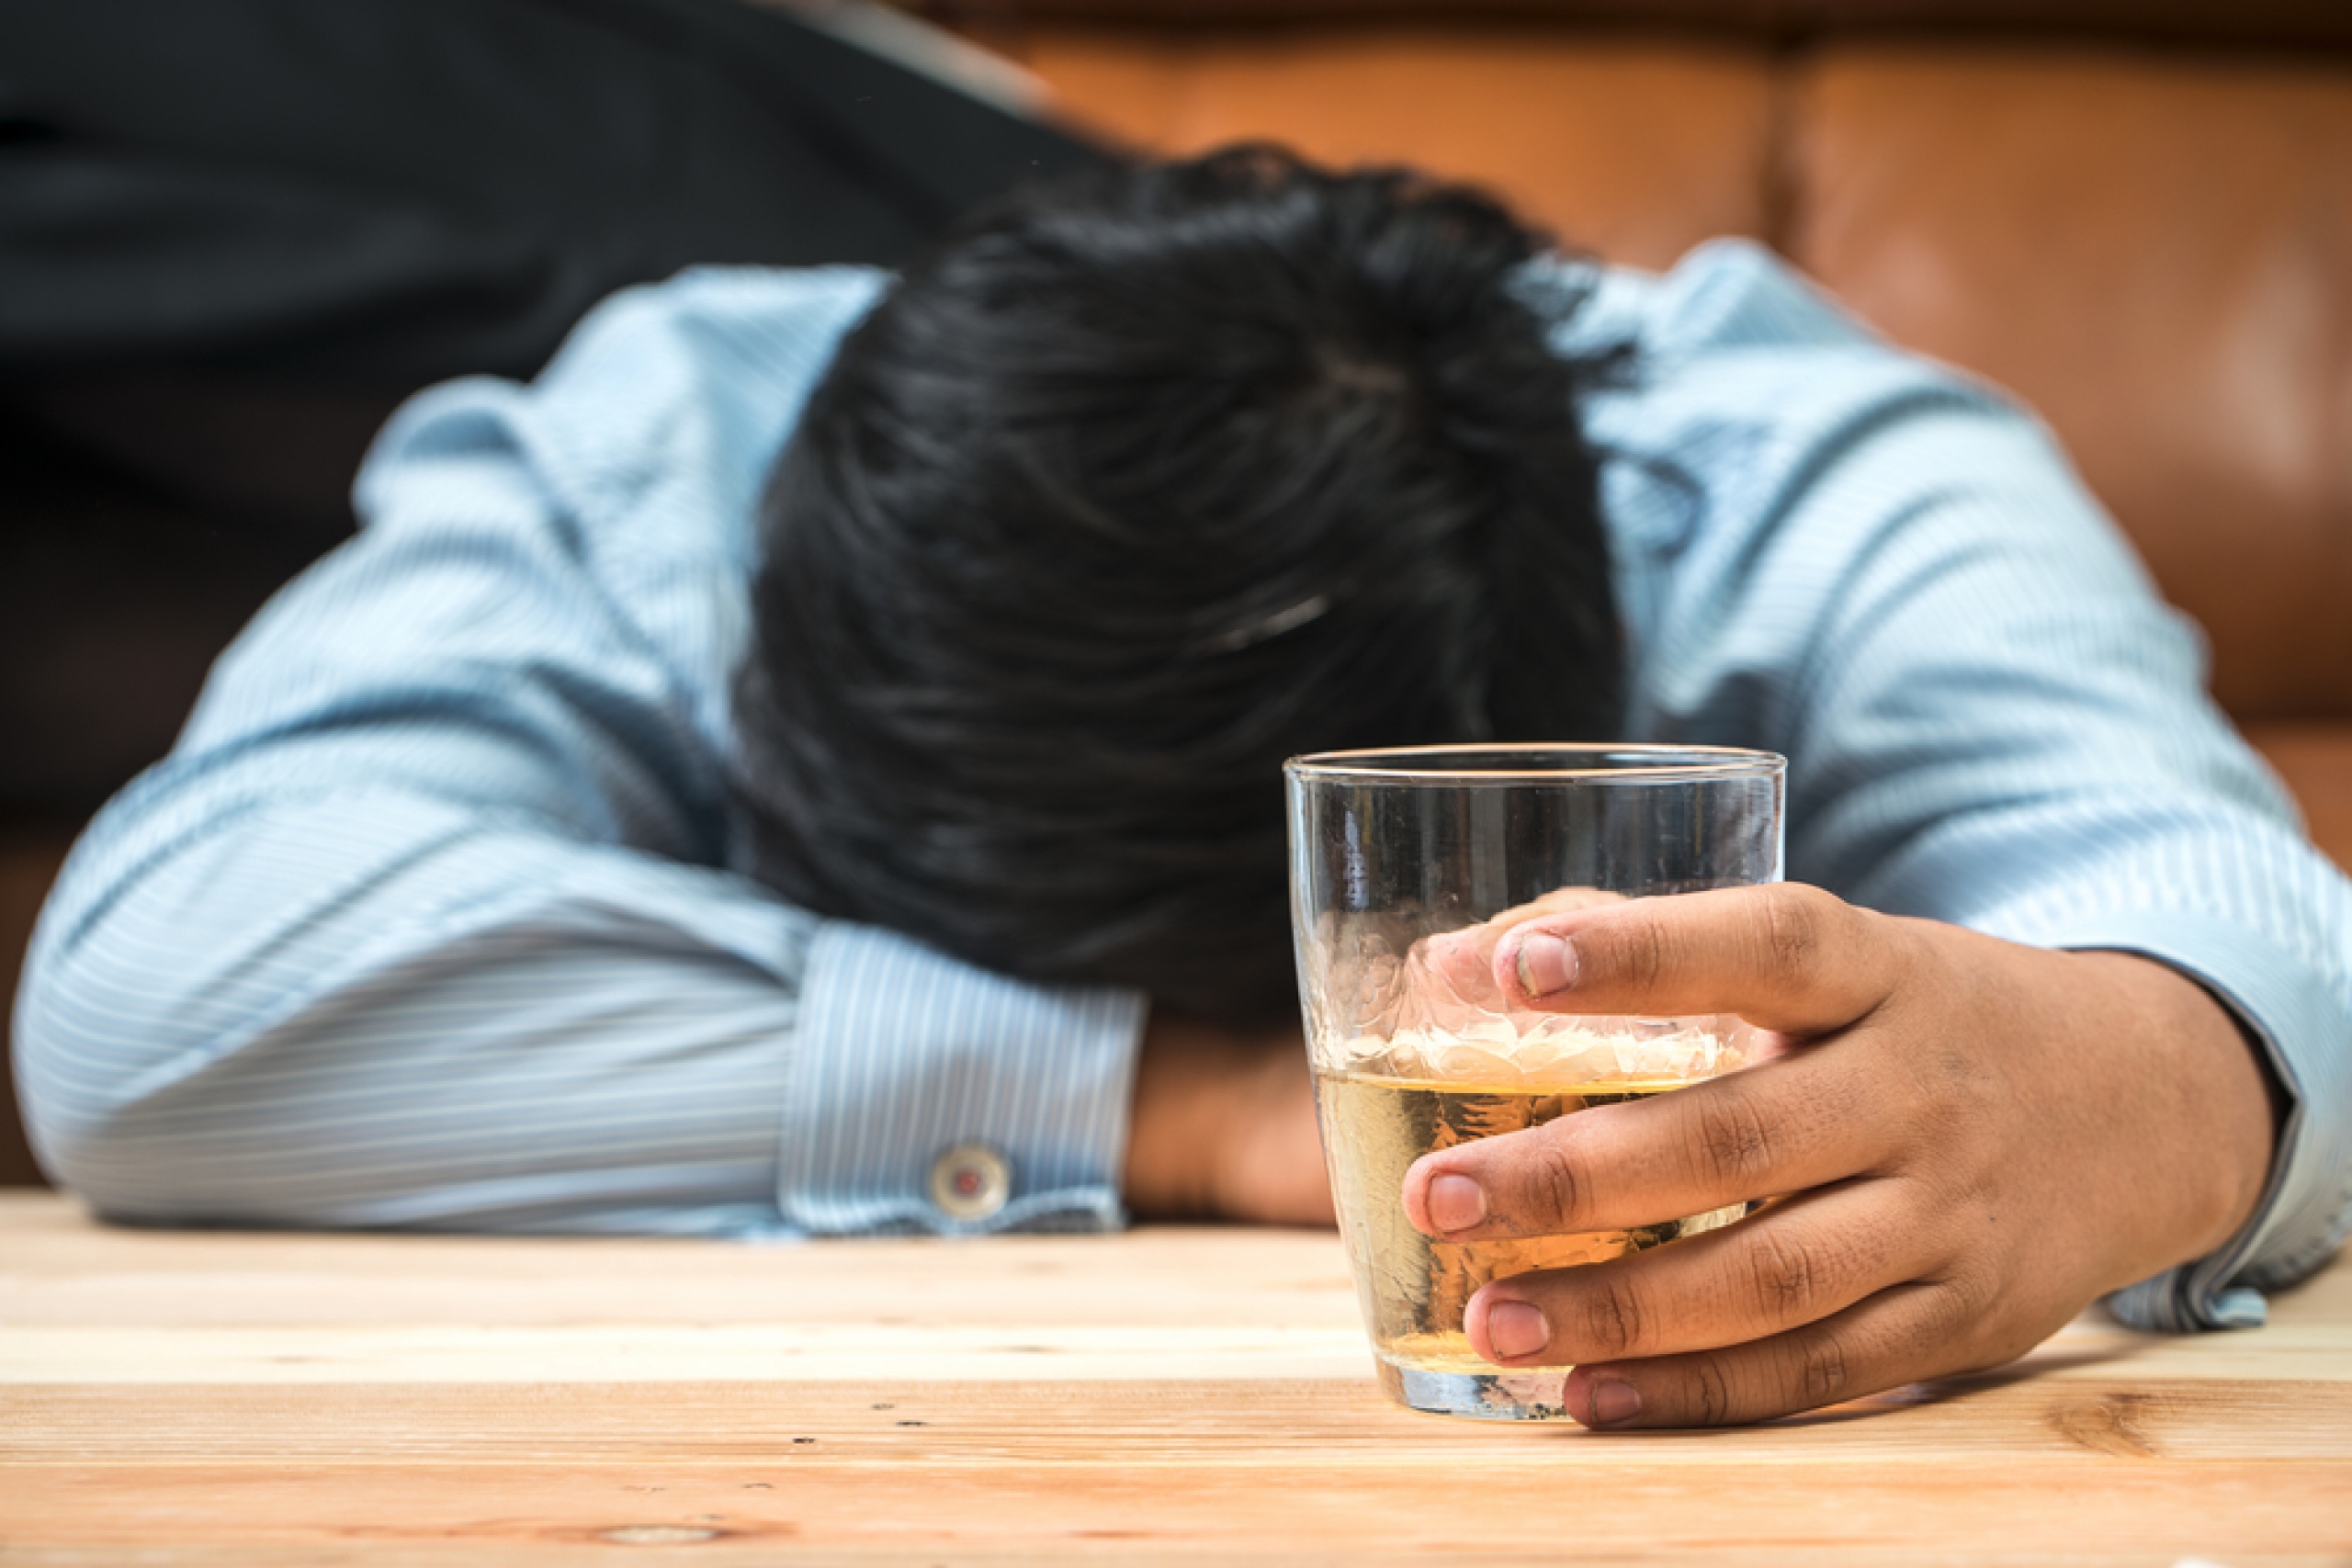 Алкоголизм: как вернуться к полноценной жизни без злоупотреблений спиртными напитками